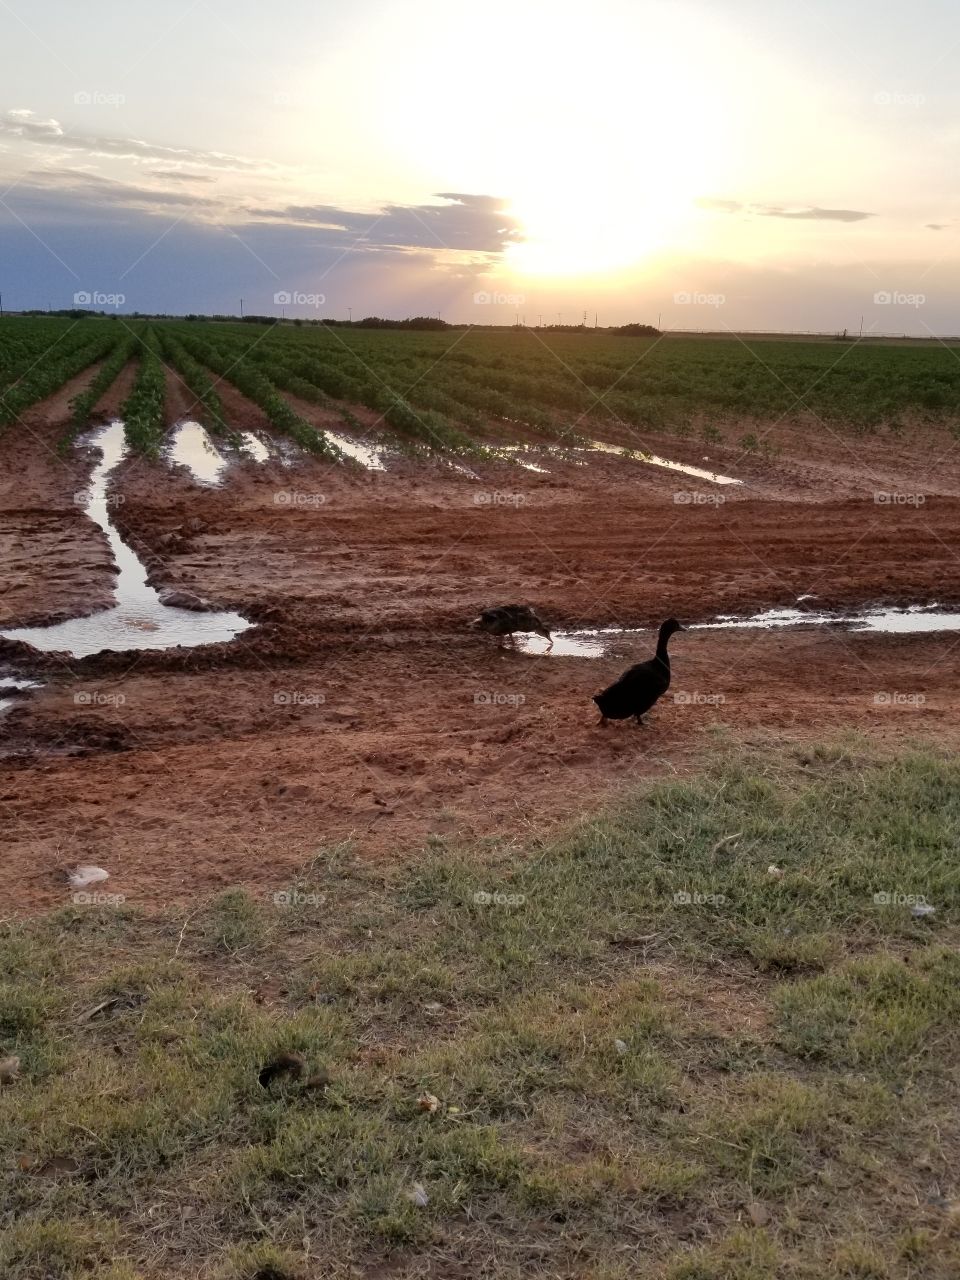 ducks enjoy a mud puddle